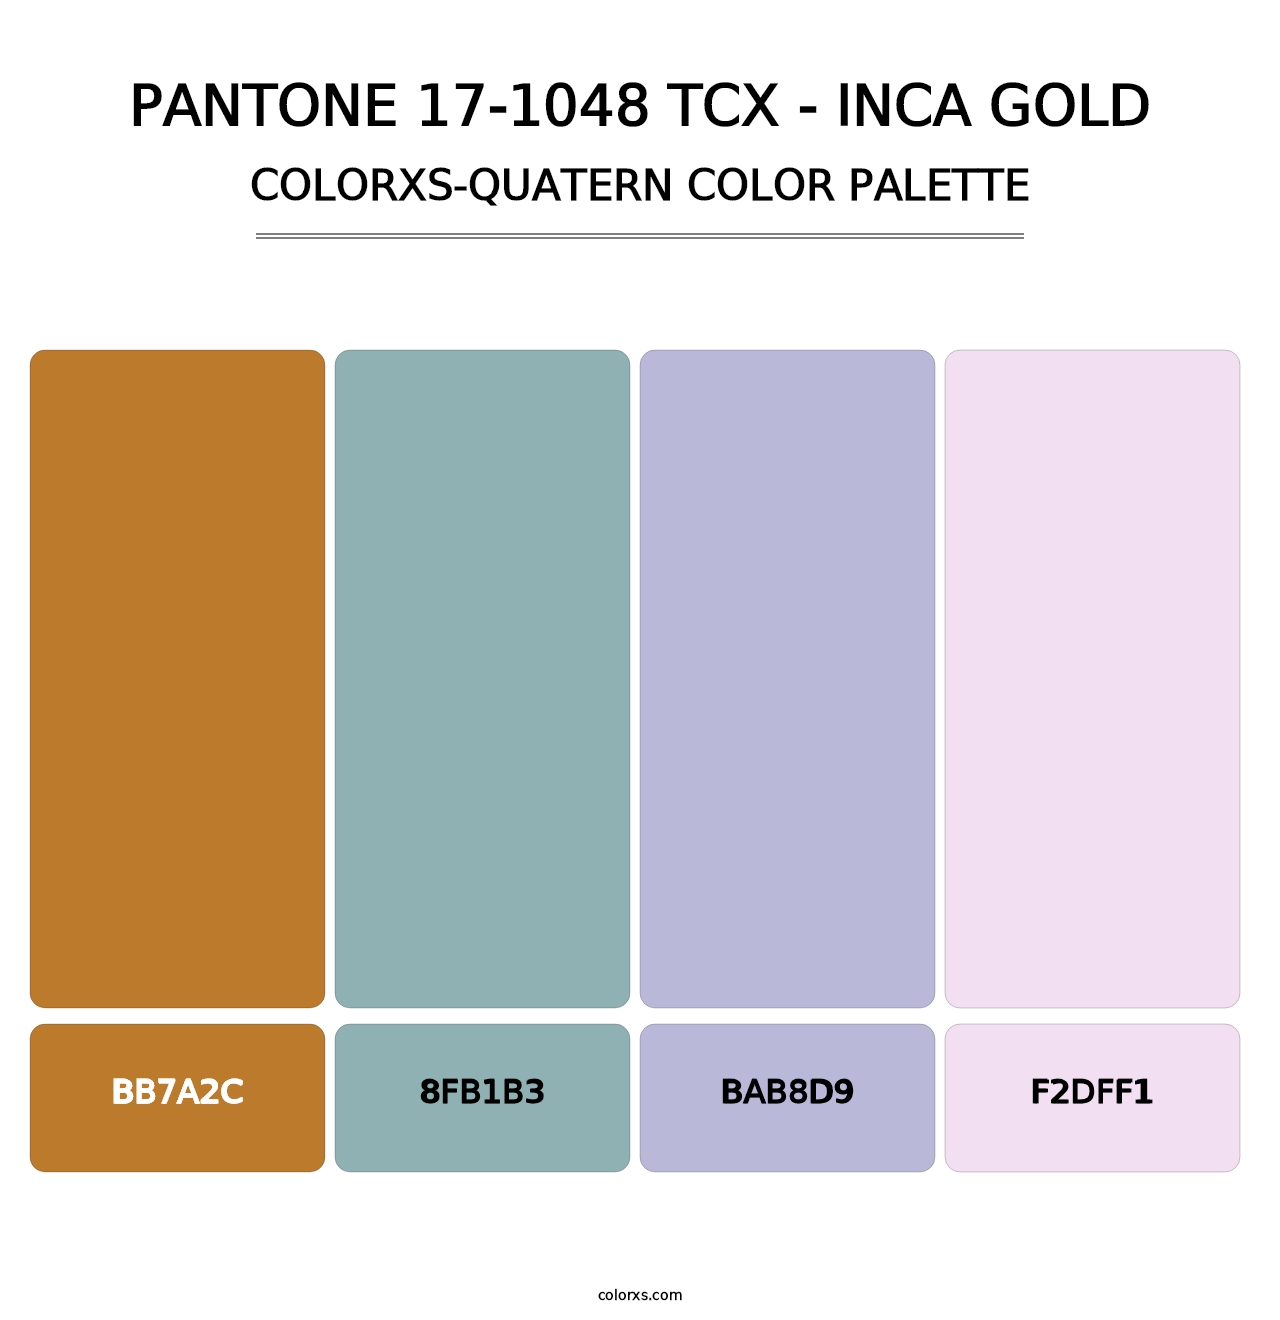 PANTONE 17-1048 TCX - Inca Gold - Colorxs Quatern Palette